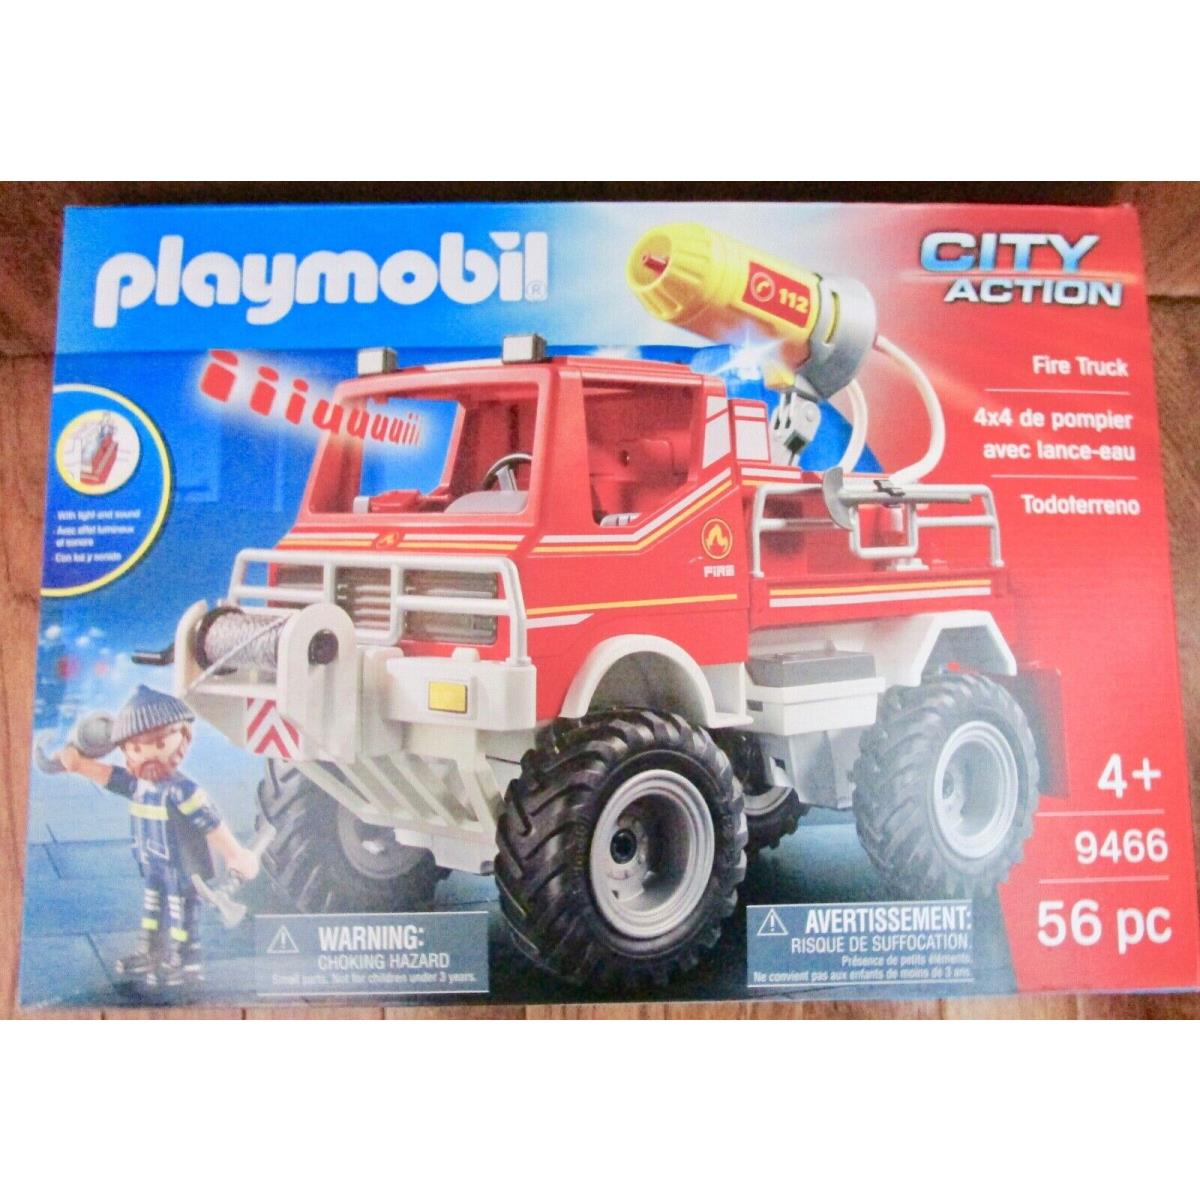 Playmobil 9466 Fire Truck U4